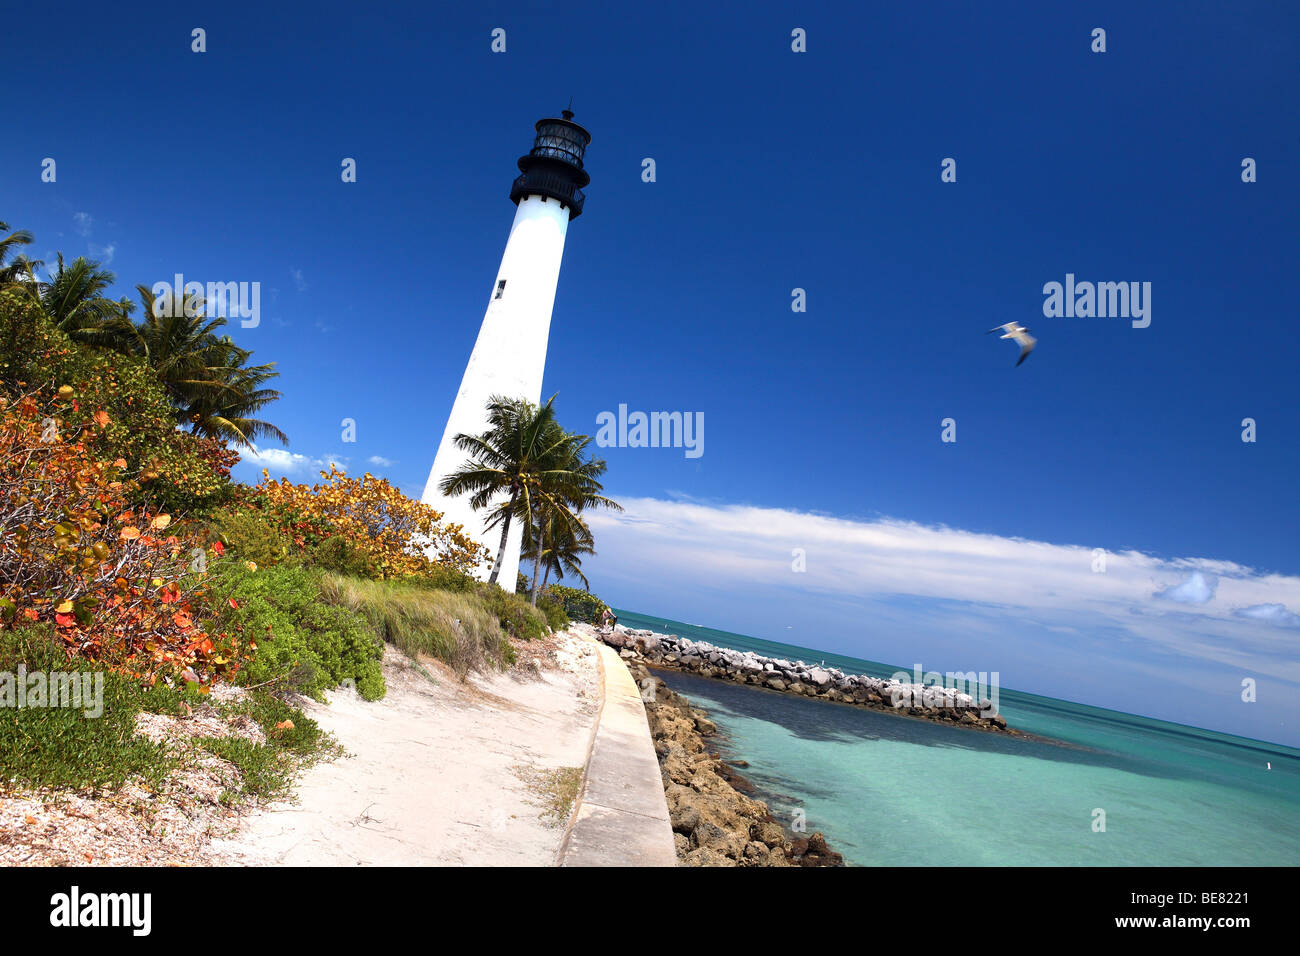 Le phare de Cape Florida sous ciel bleu, parc national Bill Baggs, Key Biscayne, Miami, Floride, USA Banque D'Images